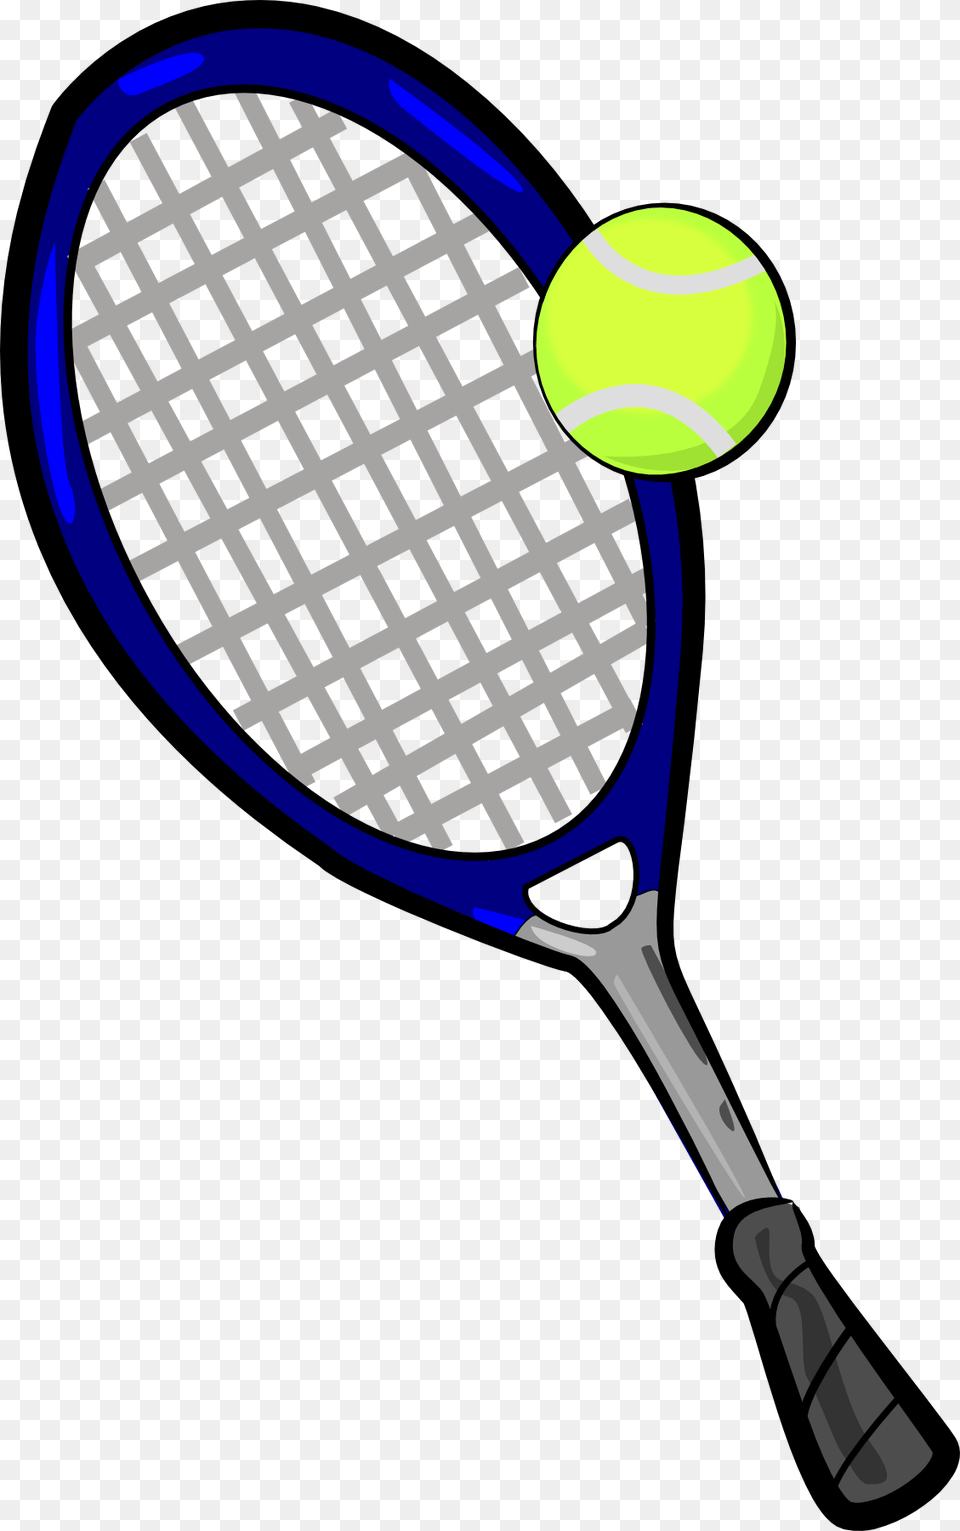 Tennis Racket Clipart, Ball, Sport, Tennis Ball, Tennis Racket Png